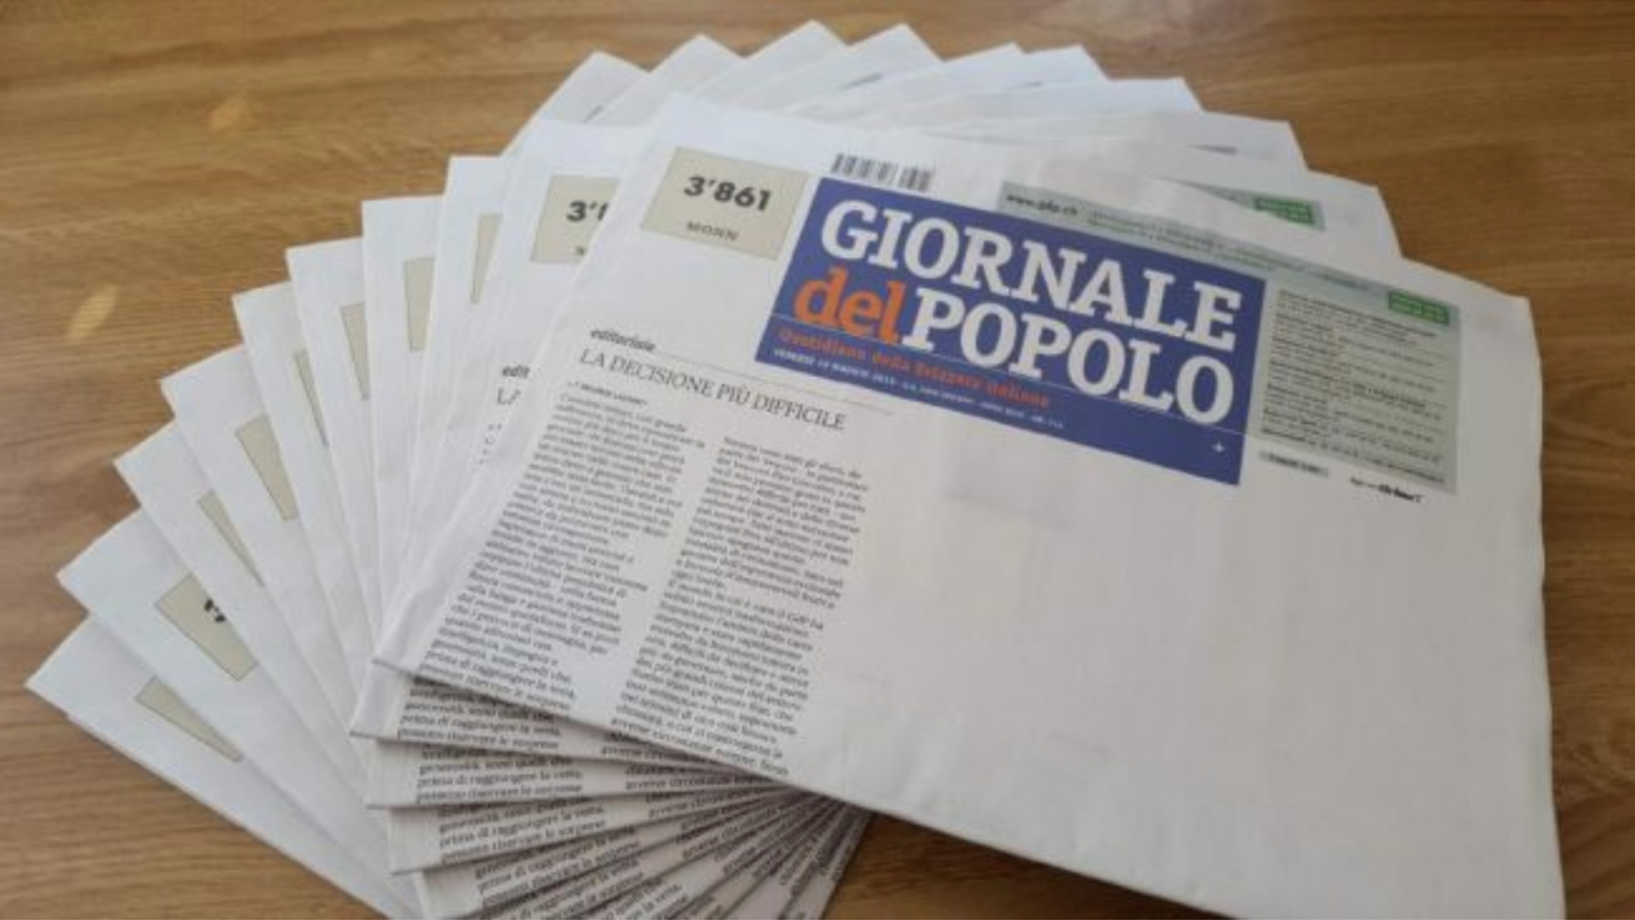 Das "Giornale del Popolo" ist heute mit weissen Seiten und lediglich einer kurzen Erklärung der Chefredaktorin auf der Front erschienen. (Bild gdp.ch)